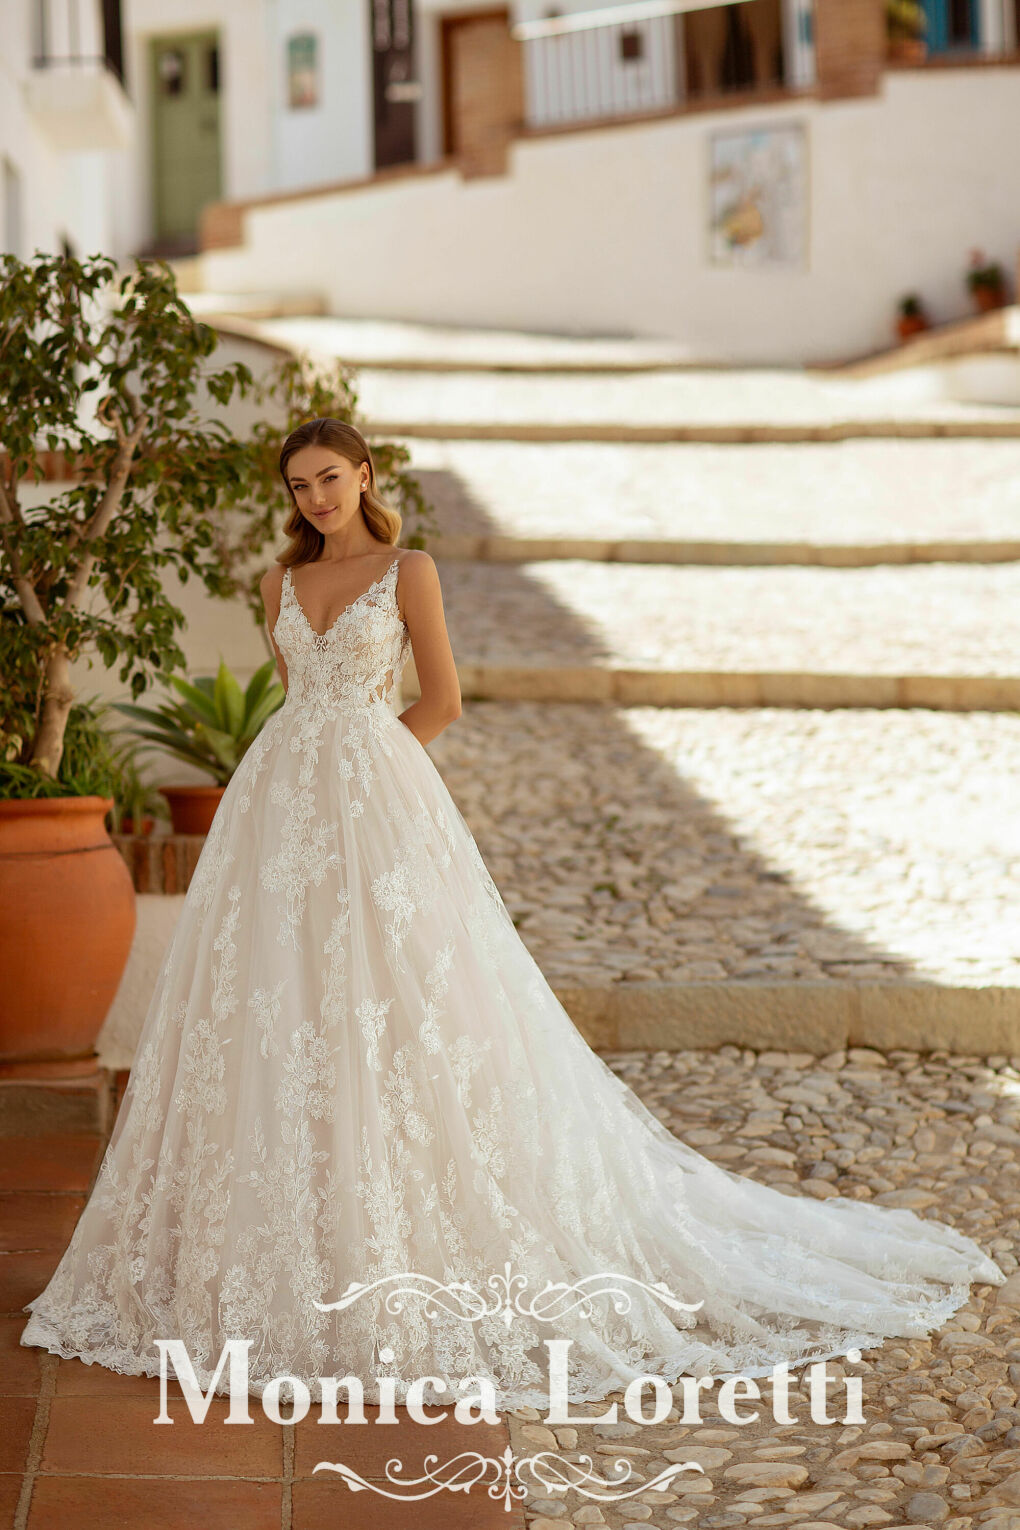 Monica Loretti 8224 Hochzeitskleid mit Blumen Treppe Blumentopf Baum Steine